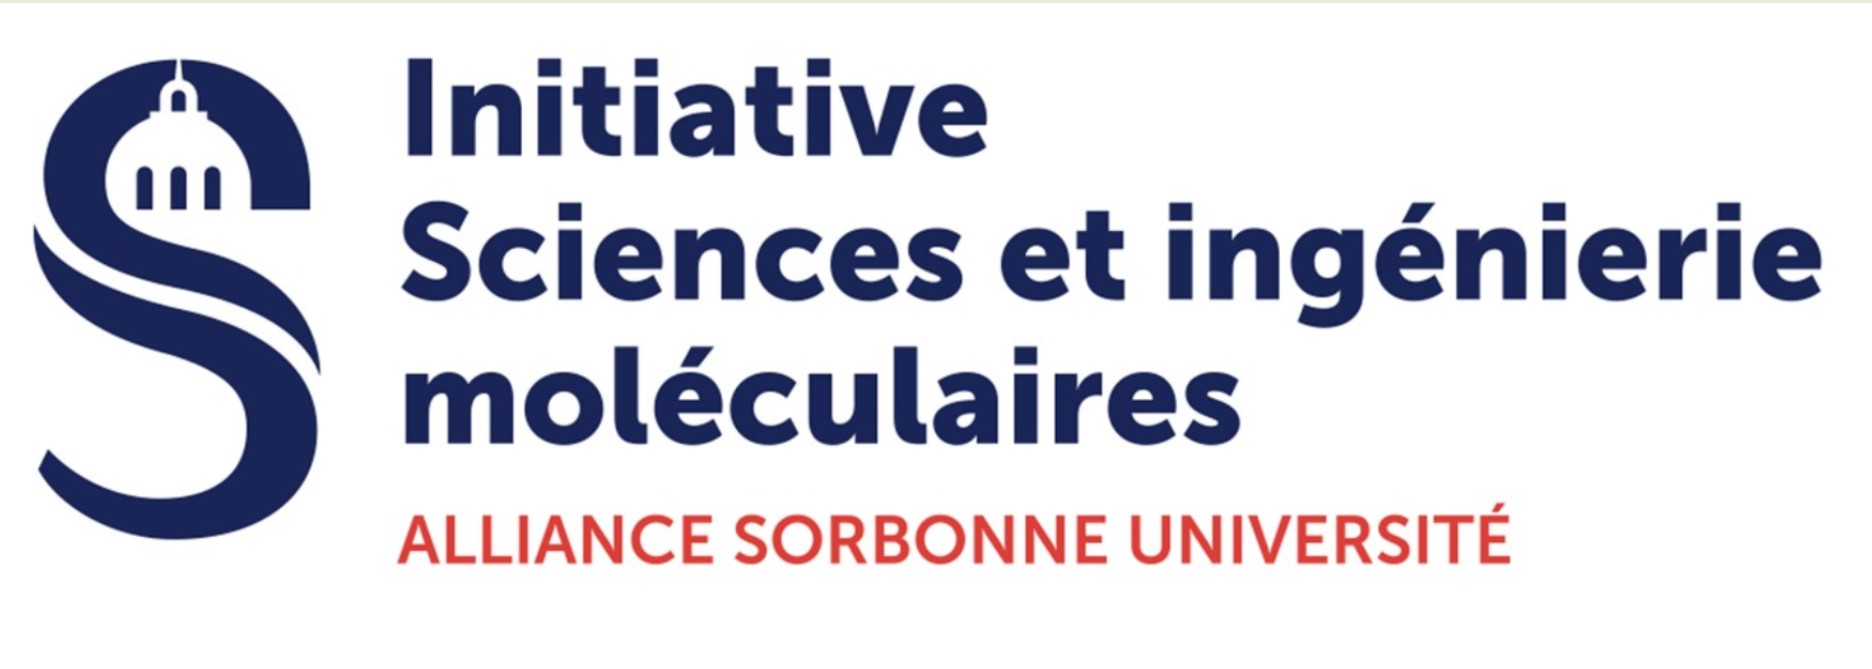 Initiative Sciences et ingénierie Moléculaires de l'Alliance Sorbonne Université (ISiM)